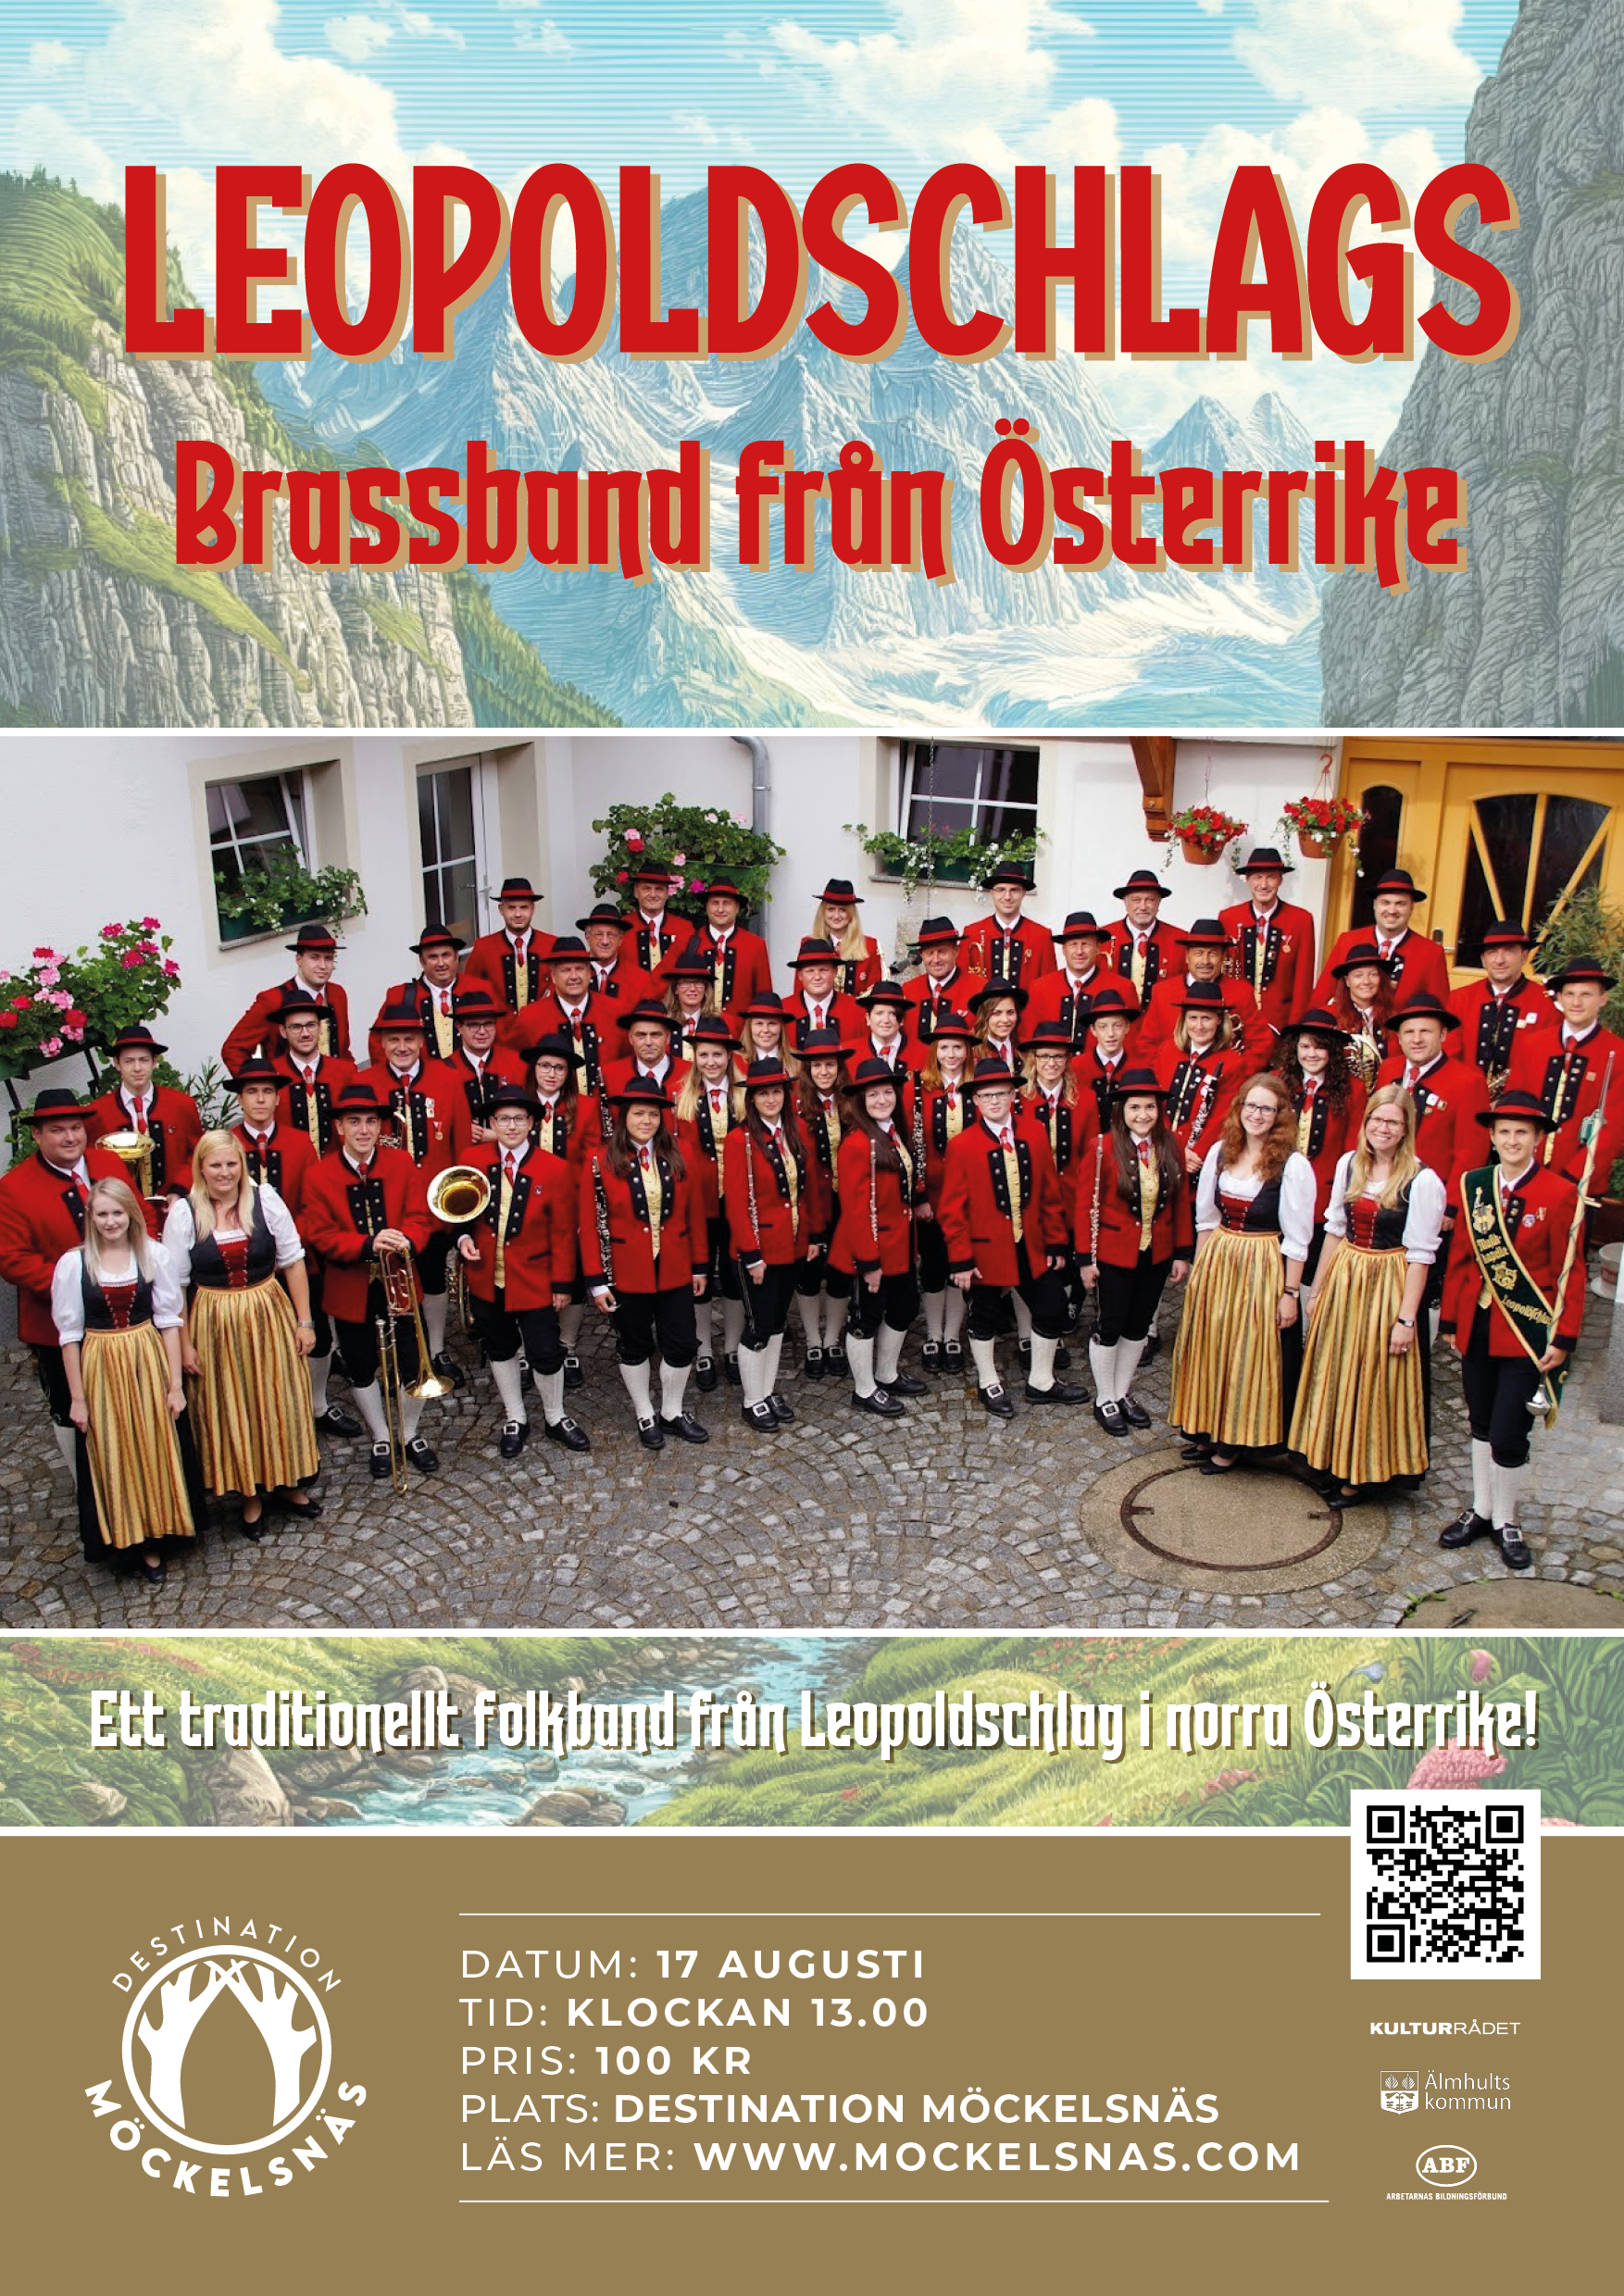 Leopoldschlags brassband från Österrike 